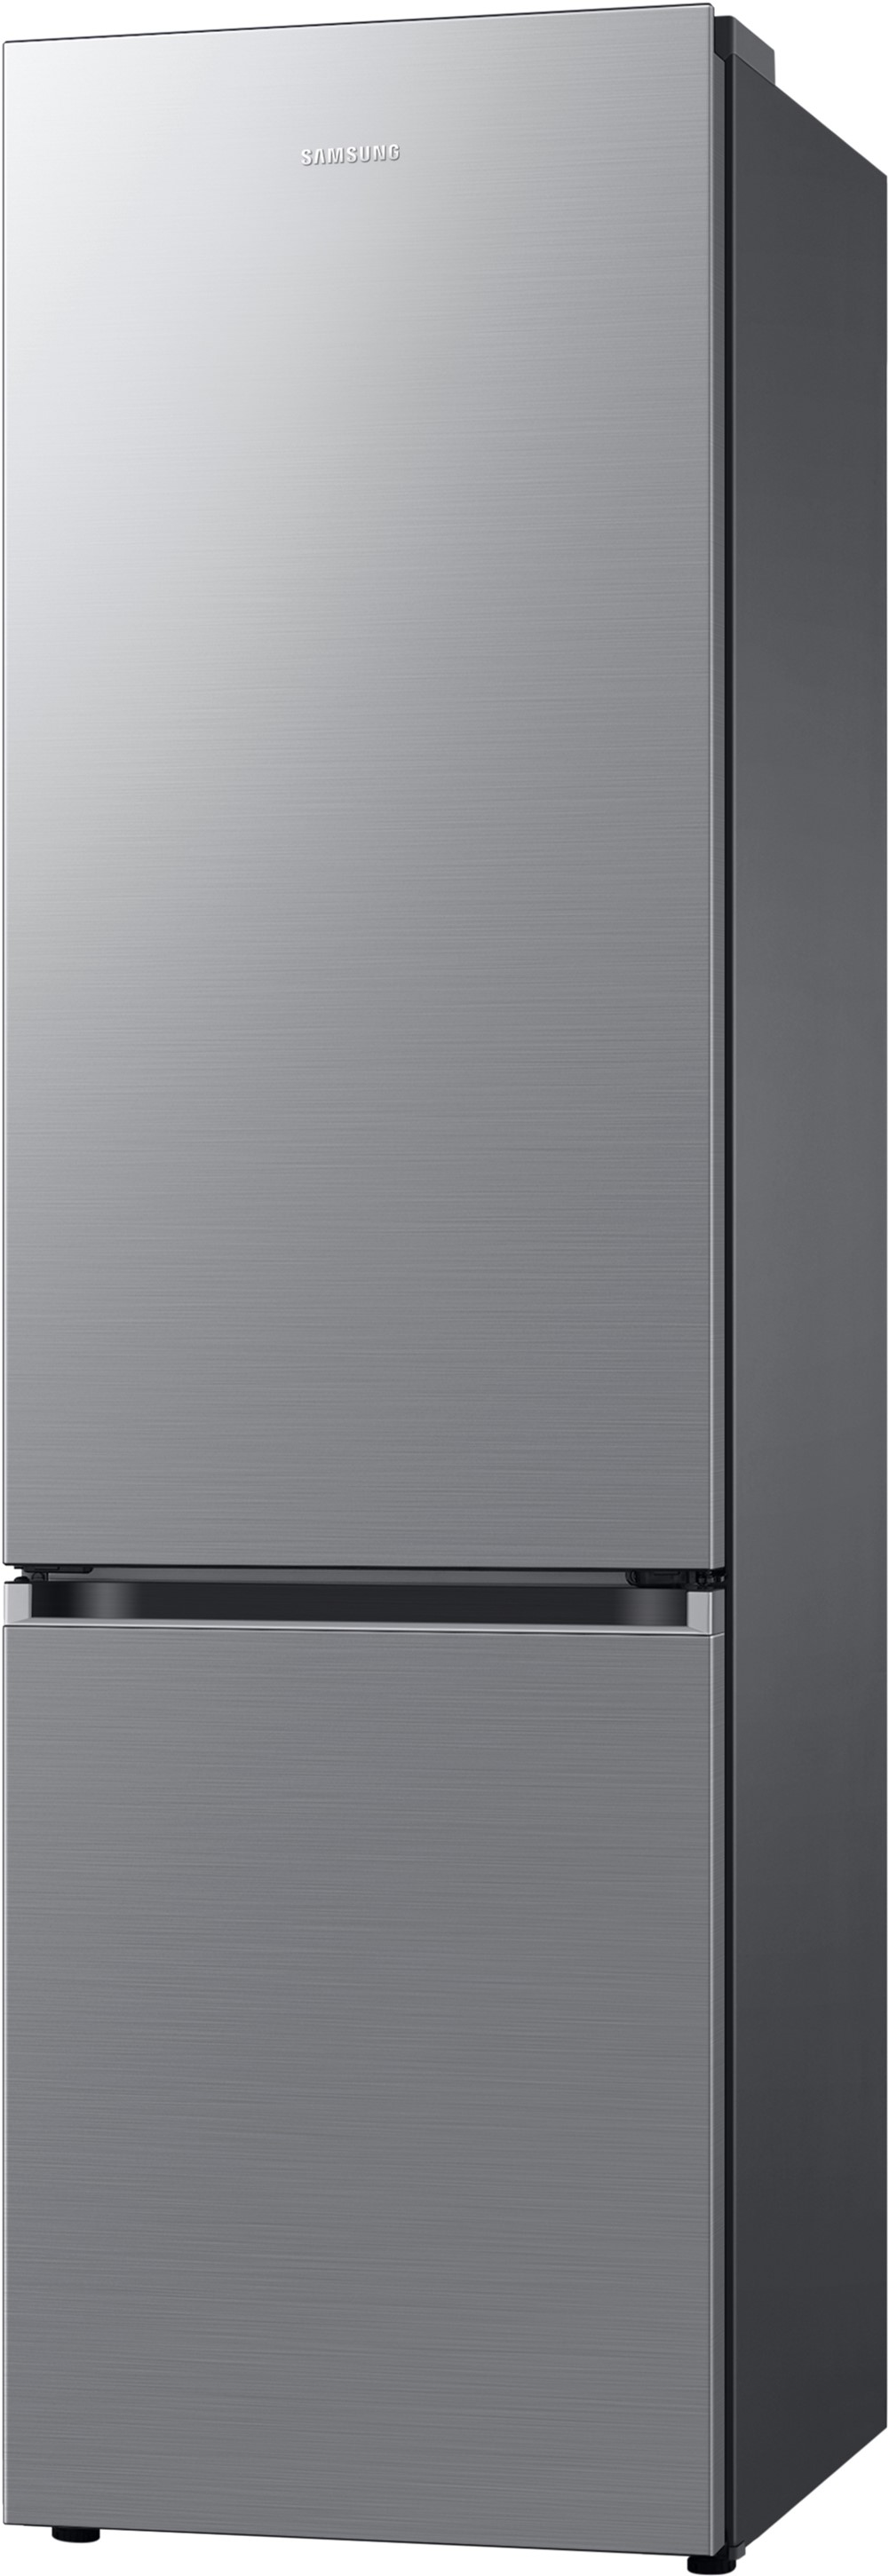 Холодильник Samsung RB38C600ES9/UA цена 27099 грн - фотография 2